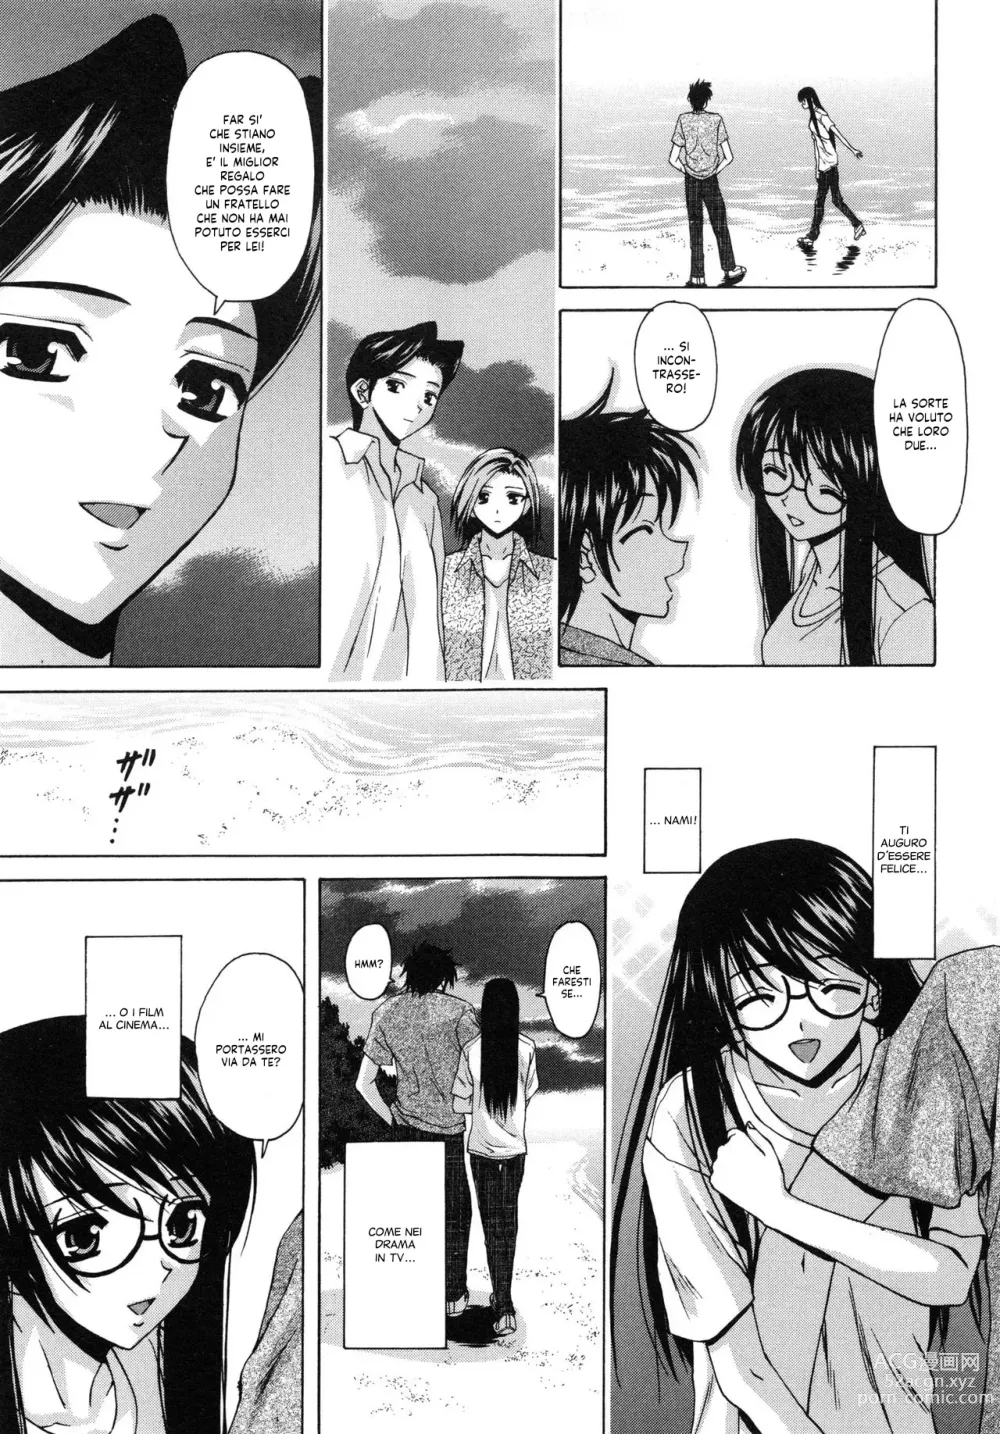 Page 227 of manga Il Sogno d'una Ragazza